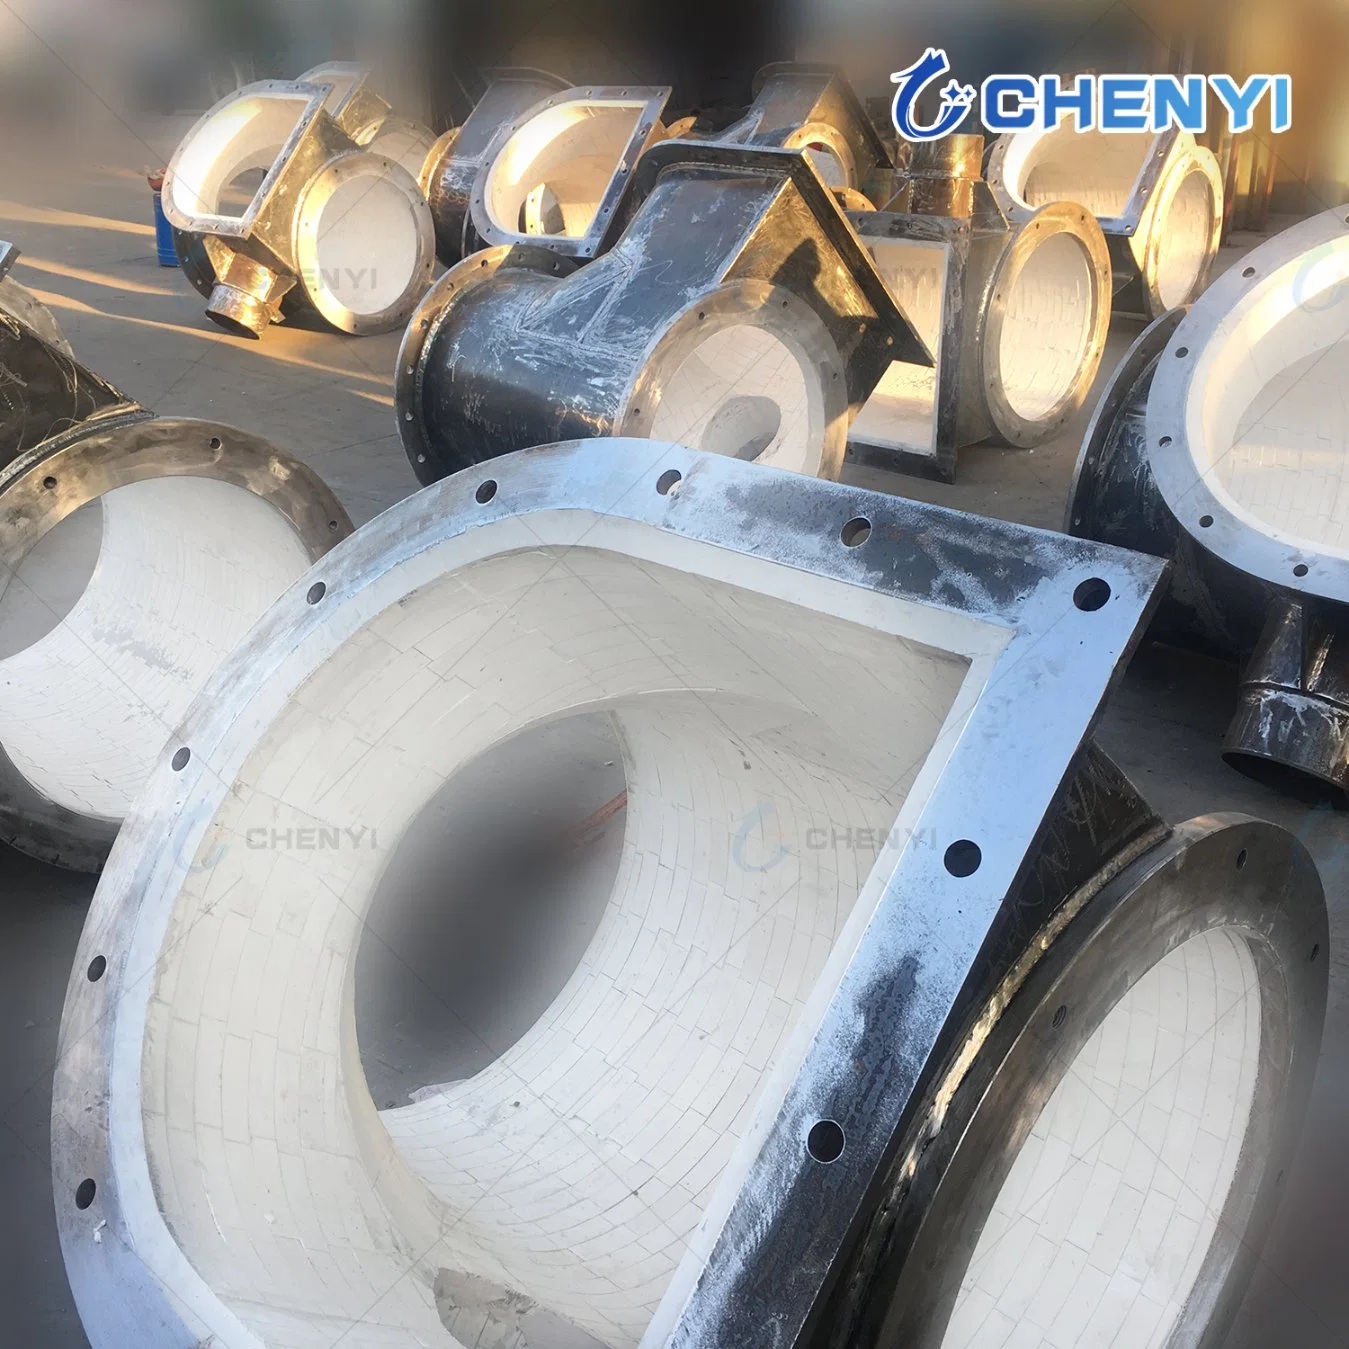 Tubo de aço resistente ao desgaste resistente a impactos na cerâmica de alumina Revestimento das curvas do cotovelo do tubo de aço revestido interior